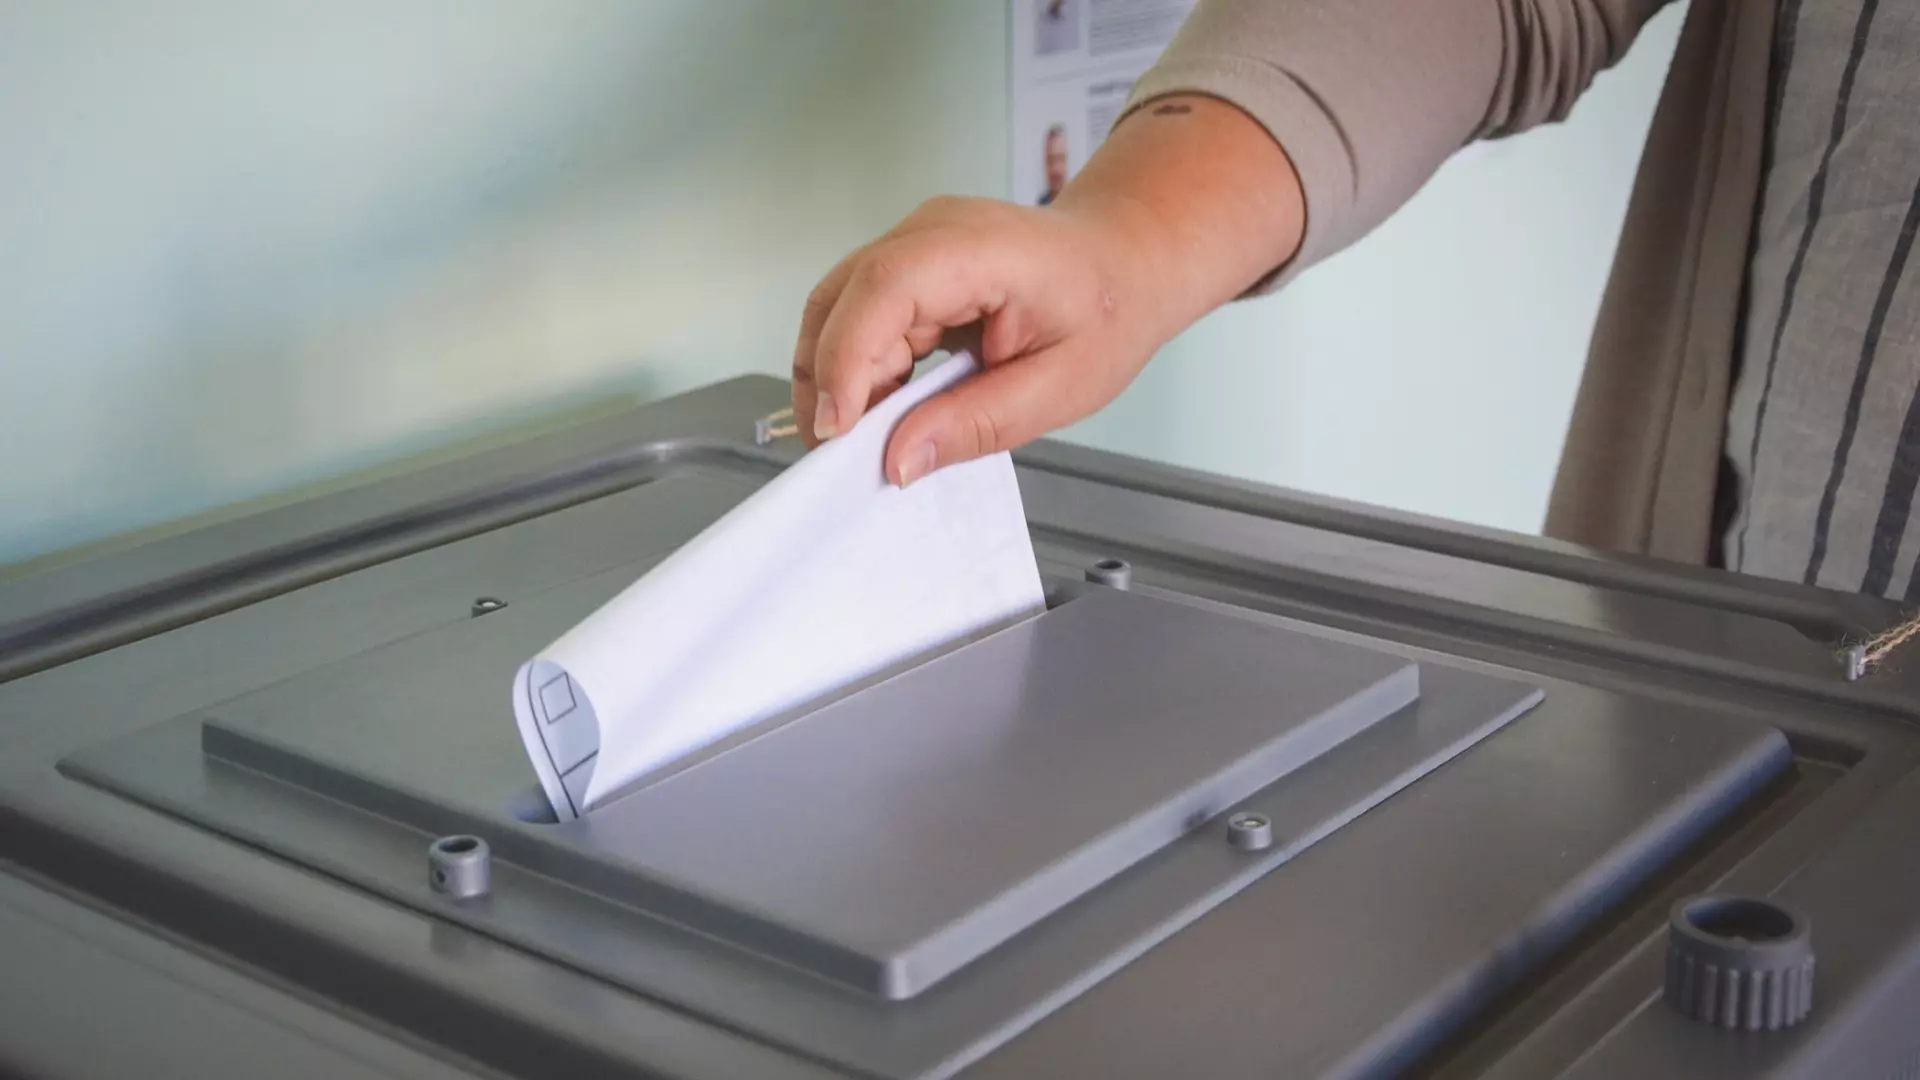 2181 избирательный участок открылся в Нижегородской области